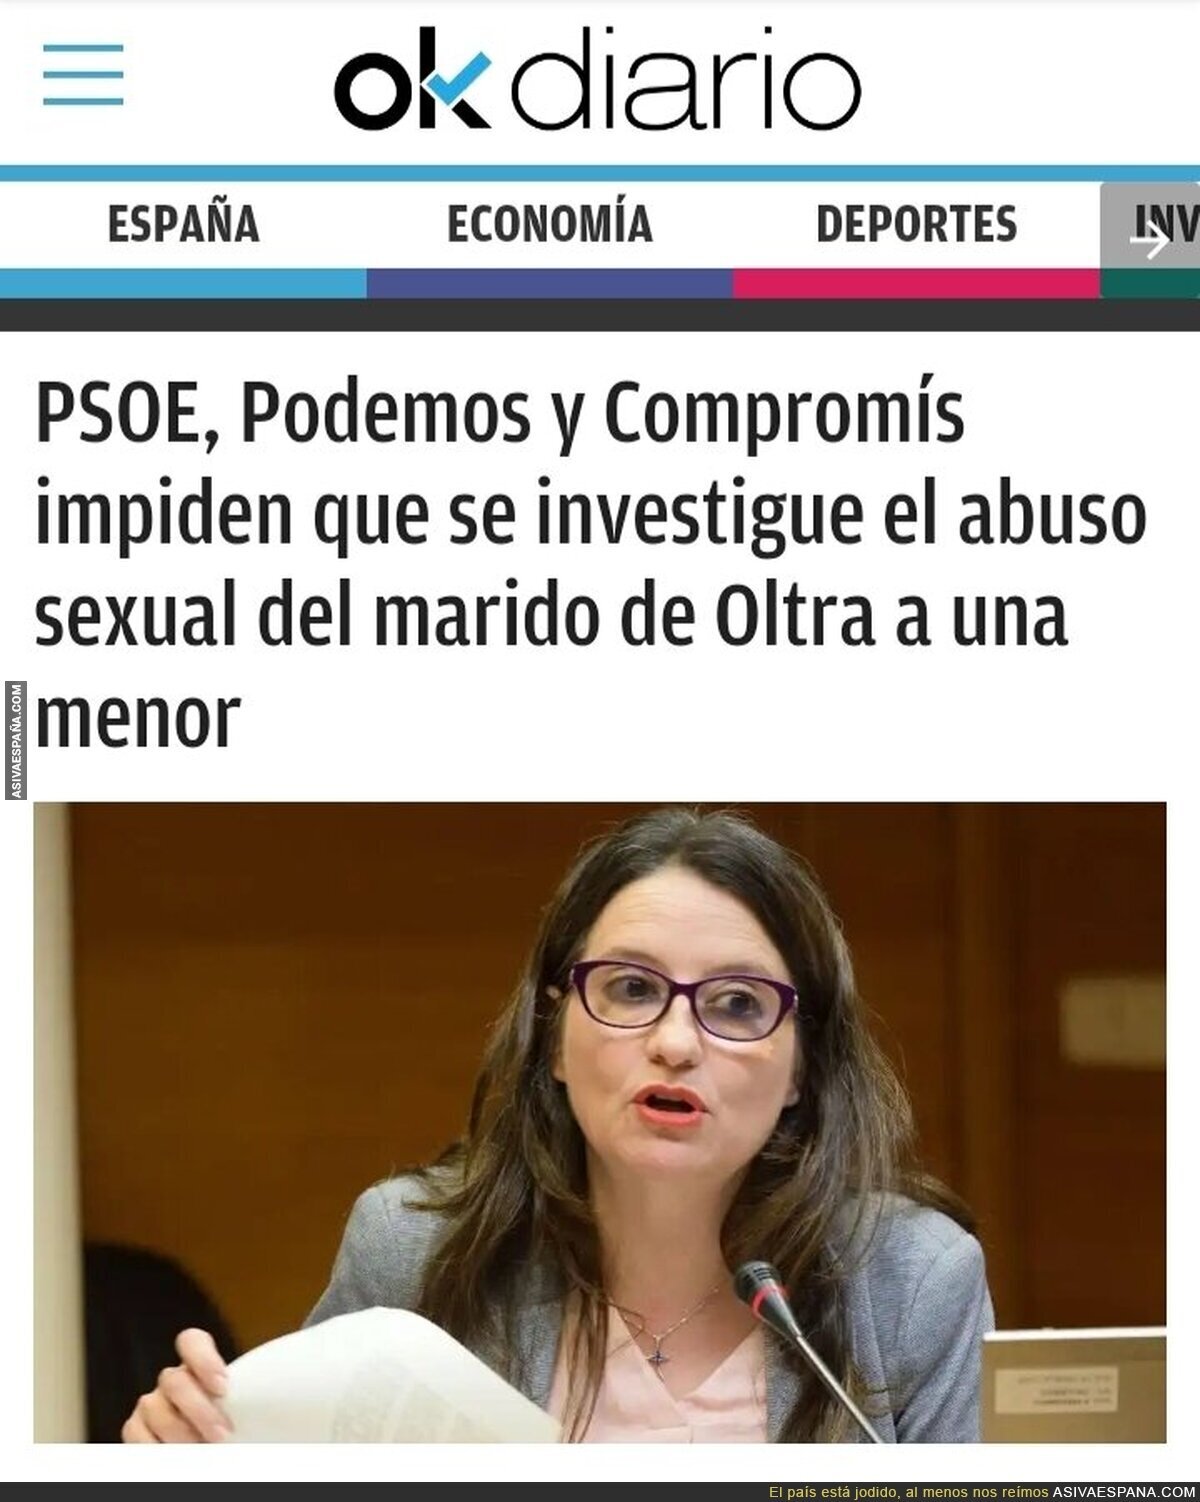 El particular feminismo de PSOE, Podemos y Compromís